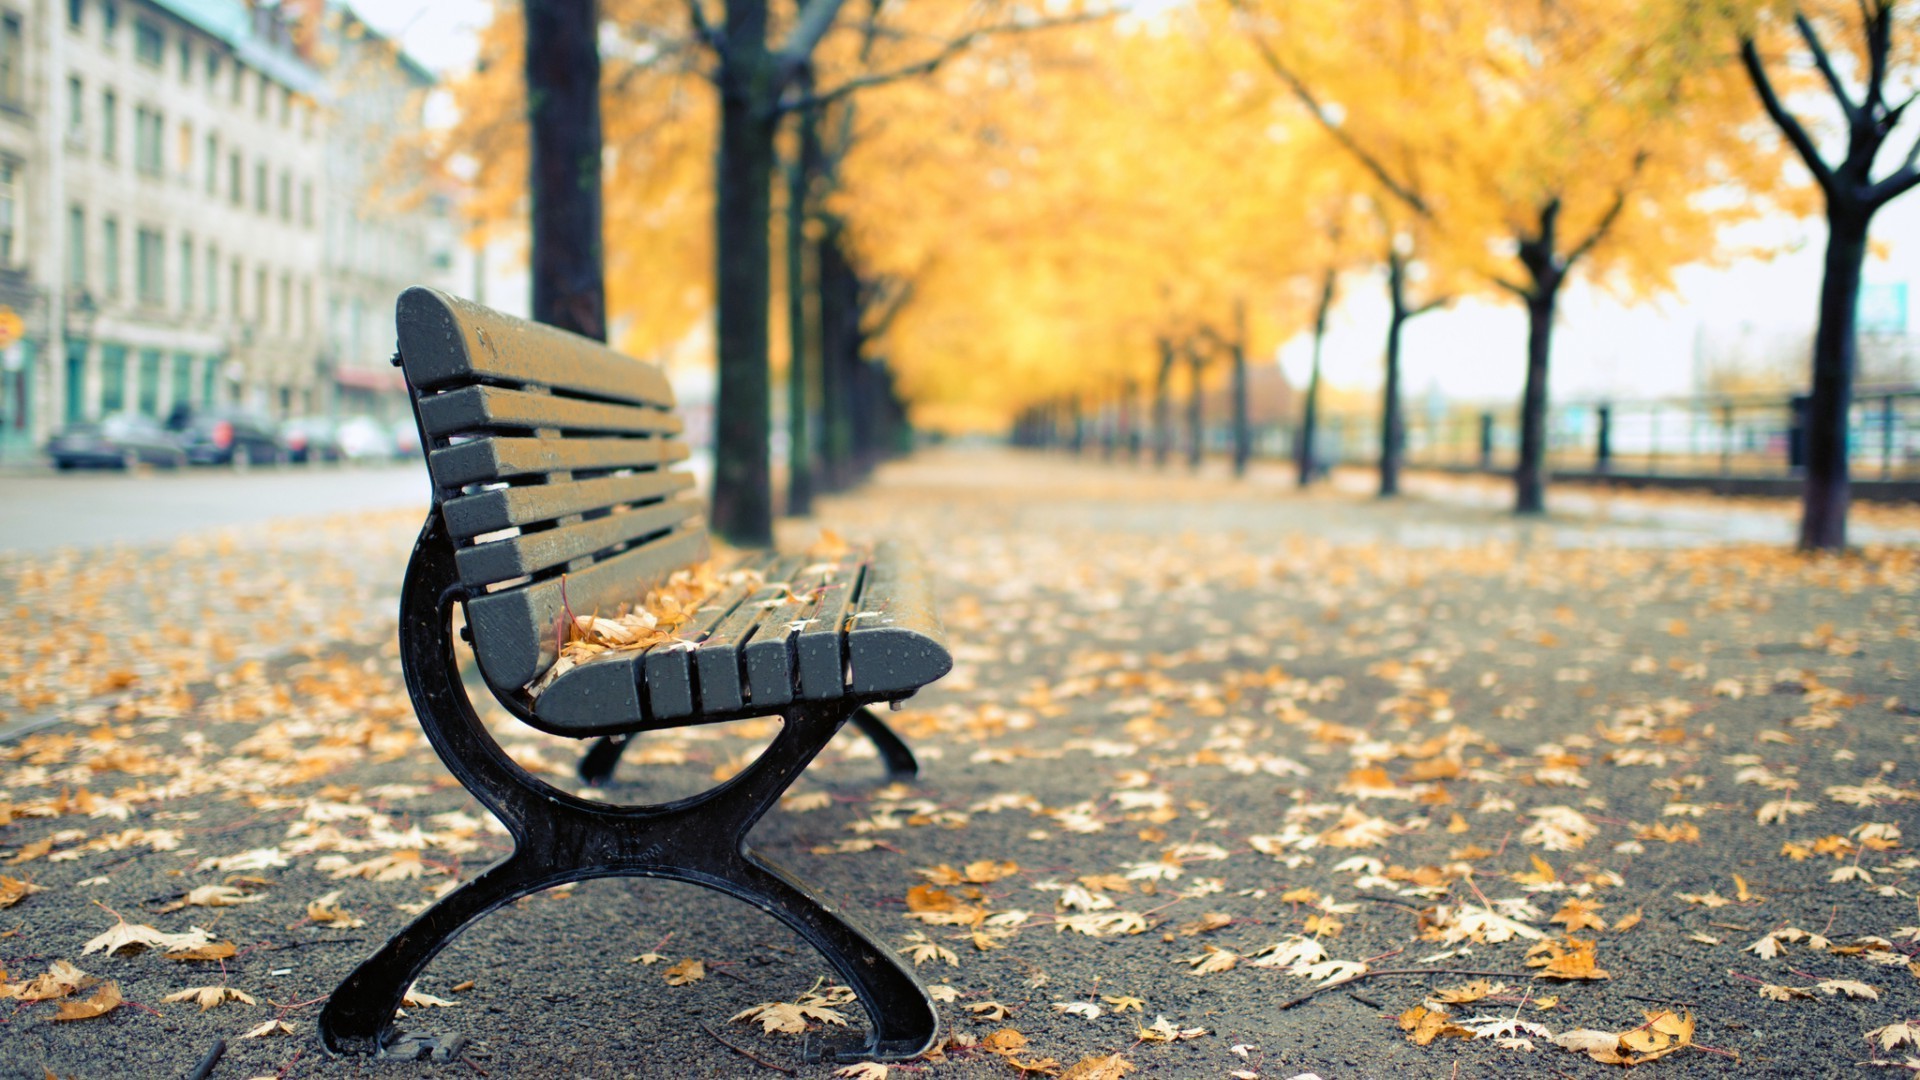 листочки осень скамейка природа древесины стул лист парк на открытом воздухе дерево сезон место релаксация хорошую погоду тротуар солнце